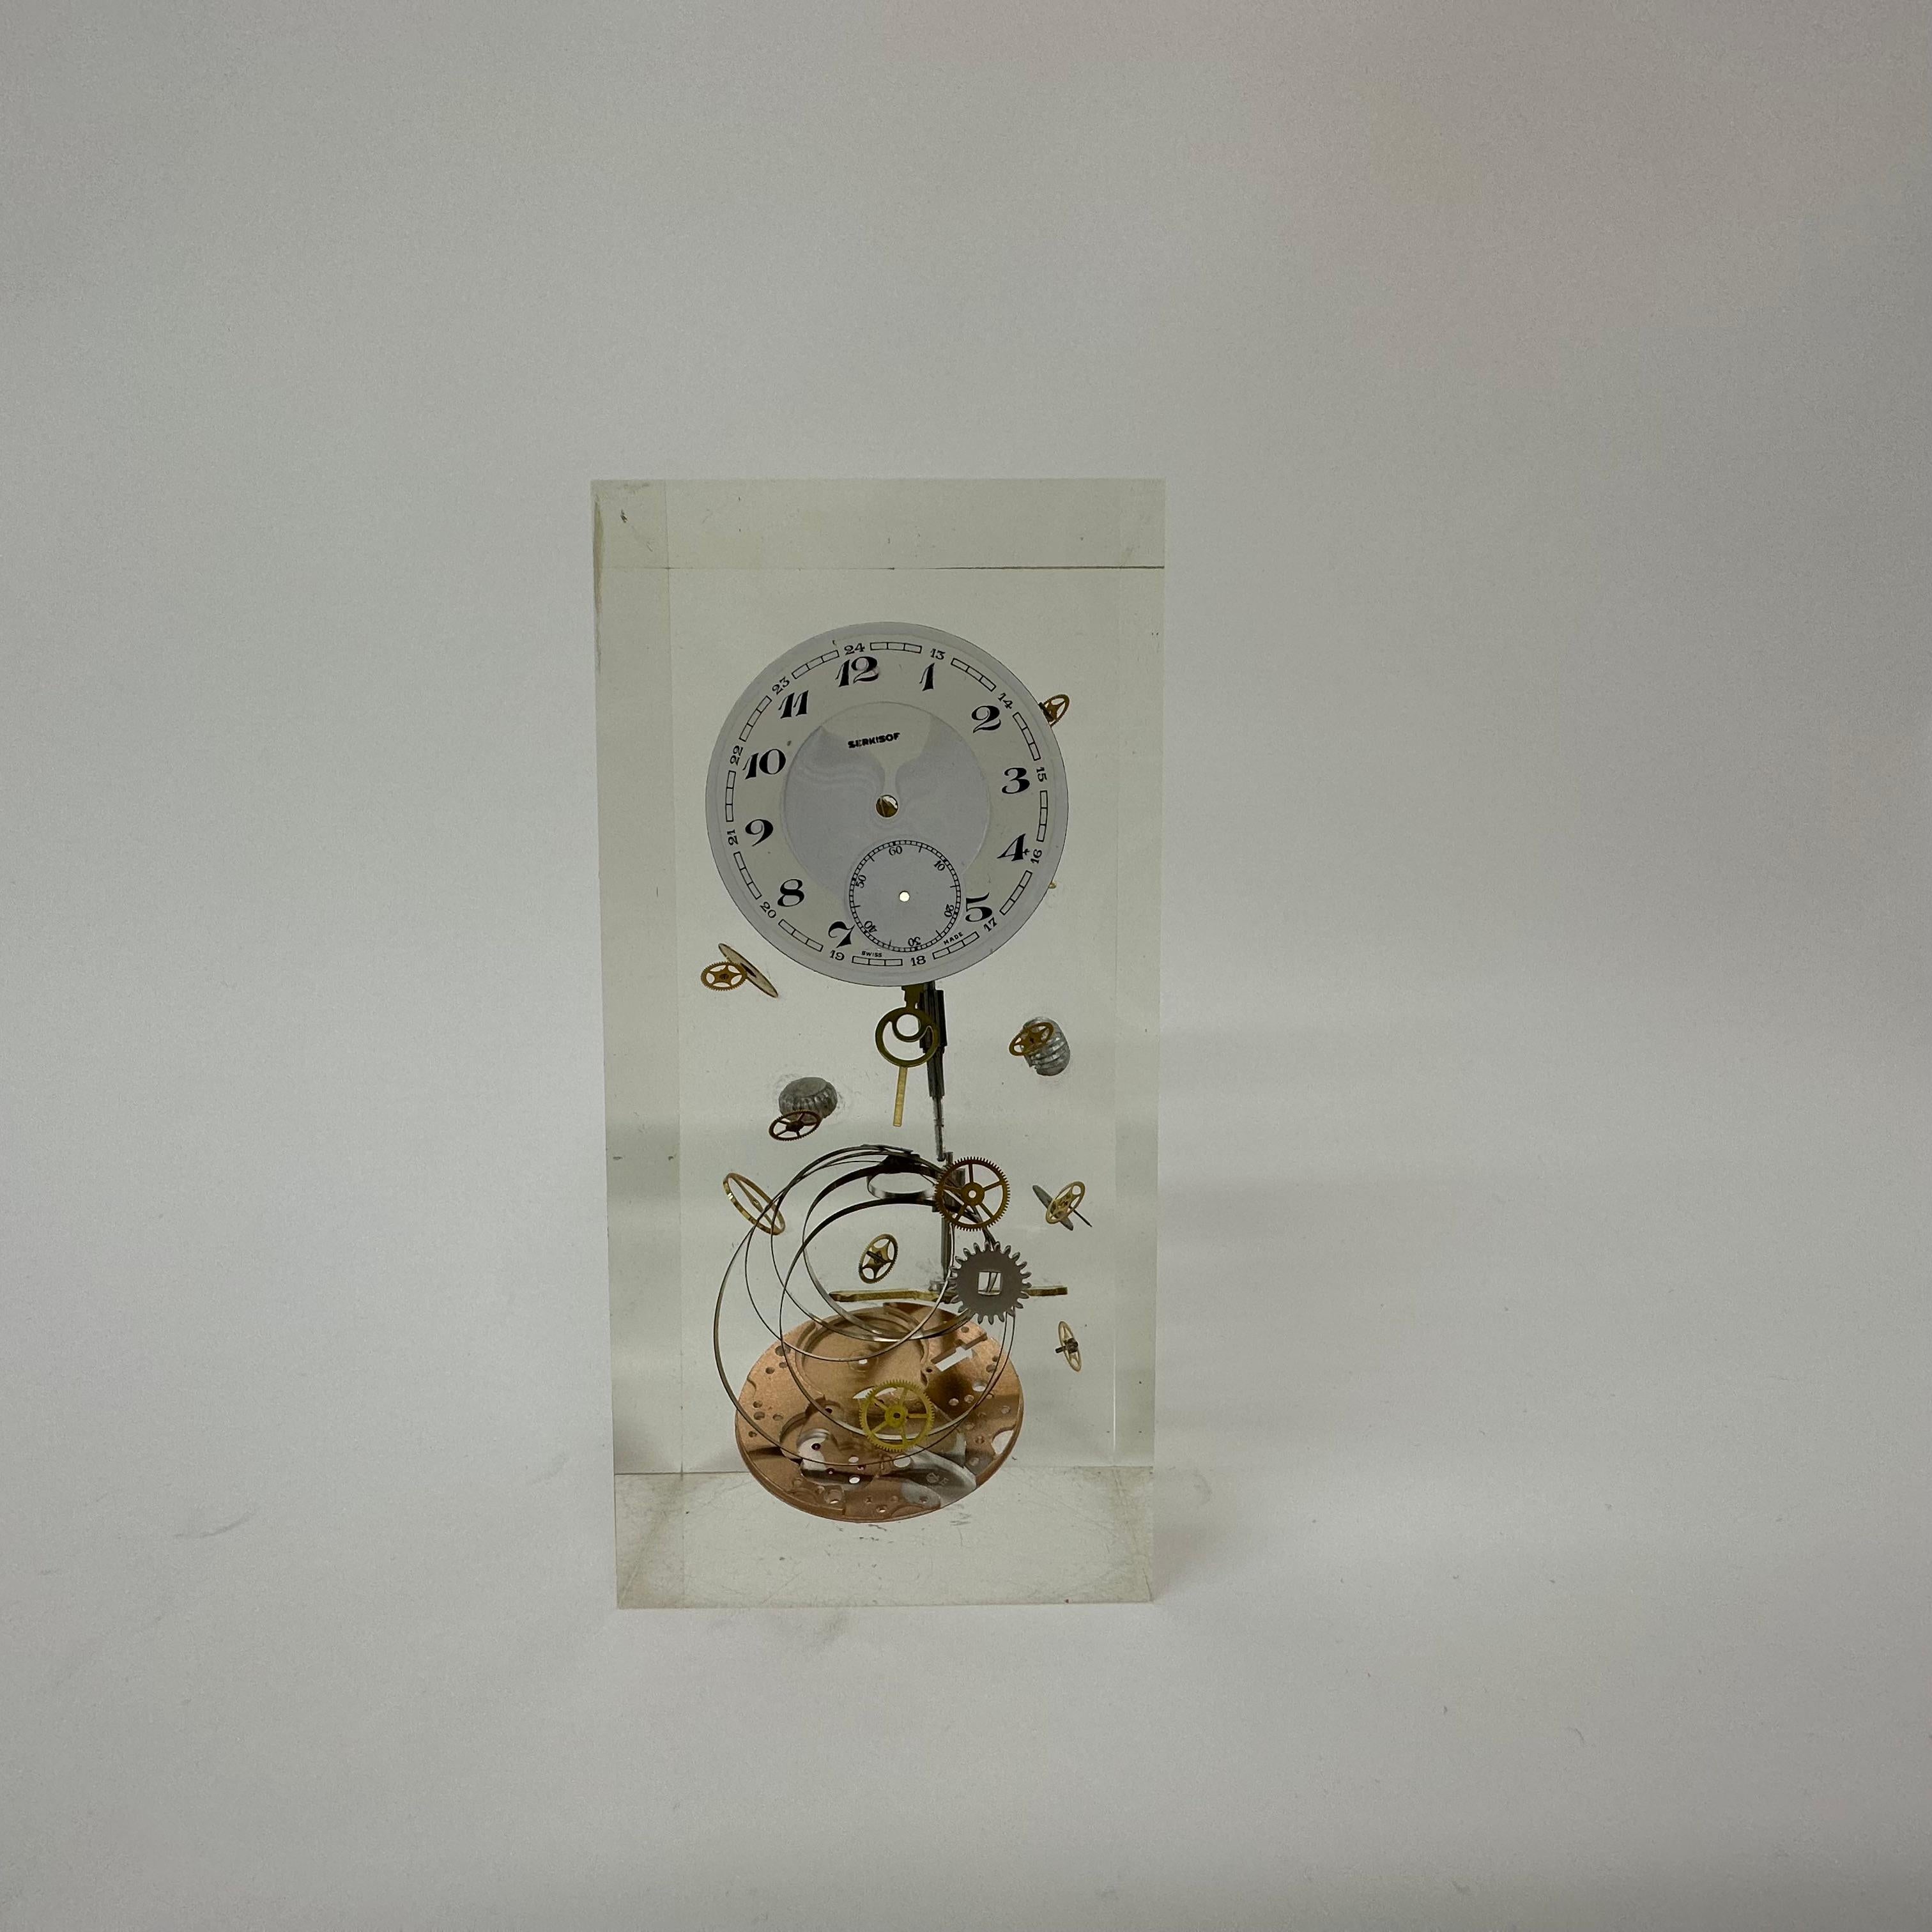 Pièces d'horloge Pierre Giraudon en lucite , 1970's France

Dimensions : 13,5 cm de haut, 6,5 cm de large, 5 cm de profondeur : 13,5cm H, 6,5cm L, 5cm P
Condit : Mint
Design/One : Pierre Giroudon
Origine : France
Période : 1970's
